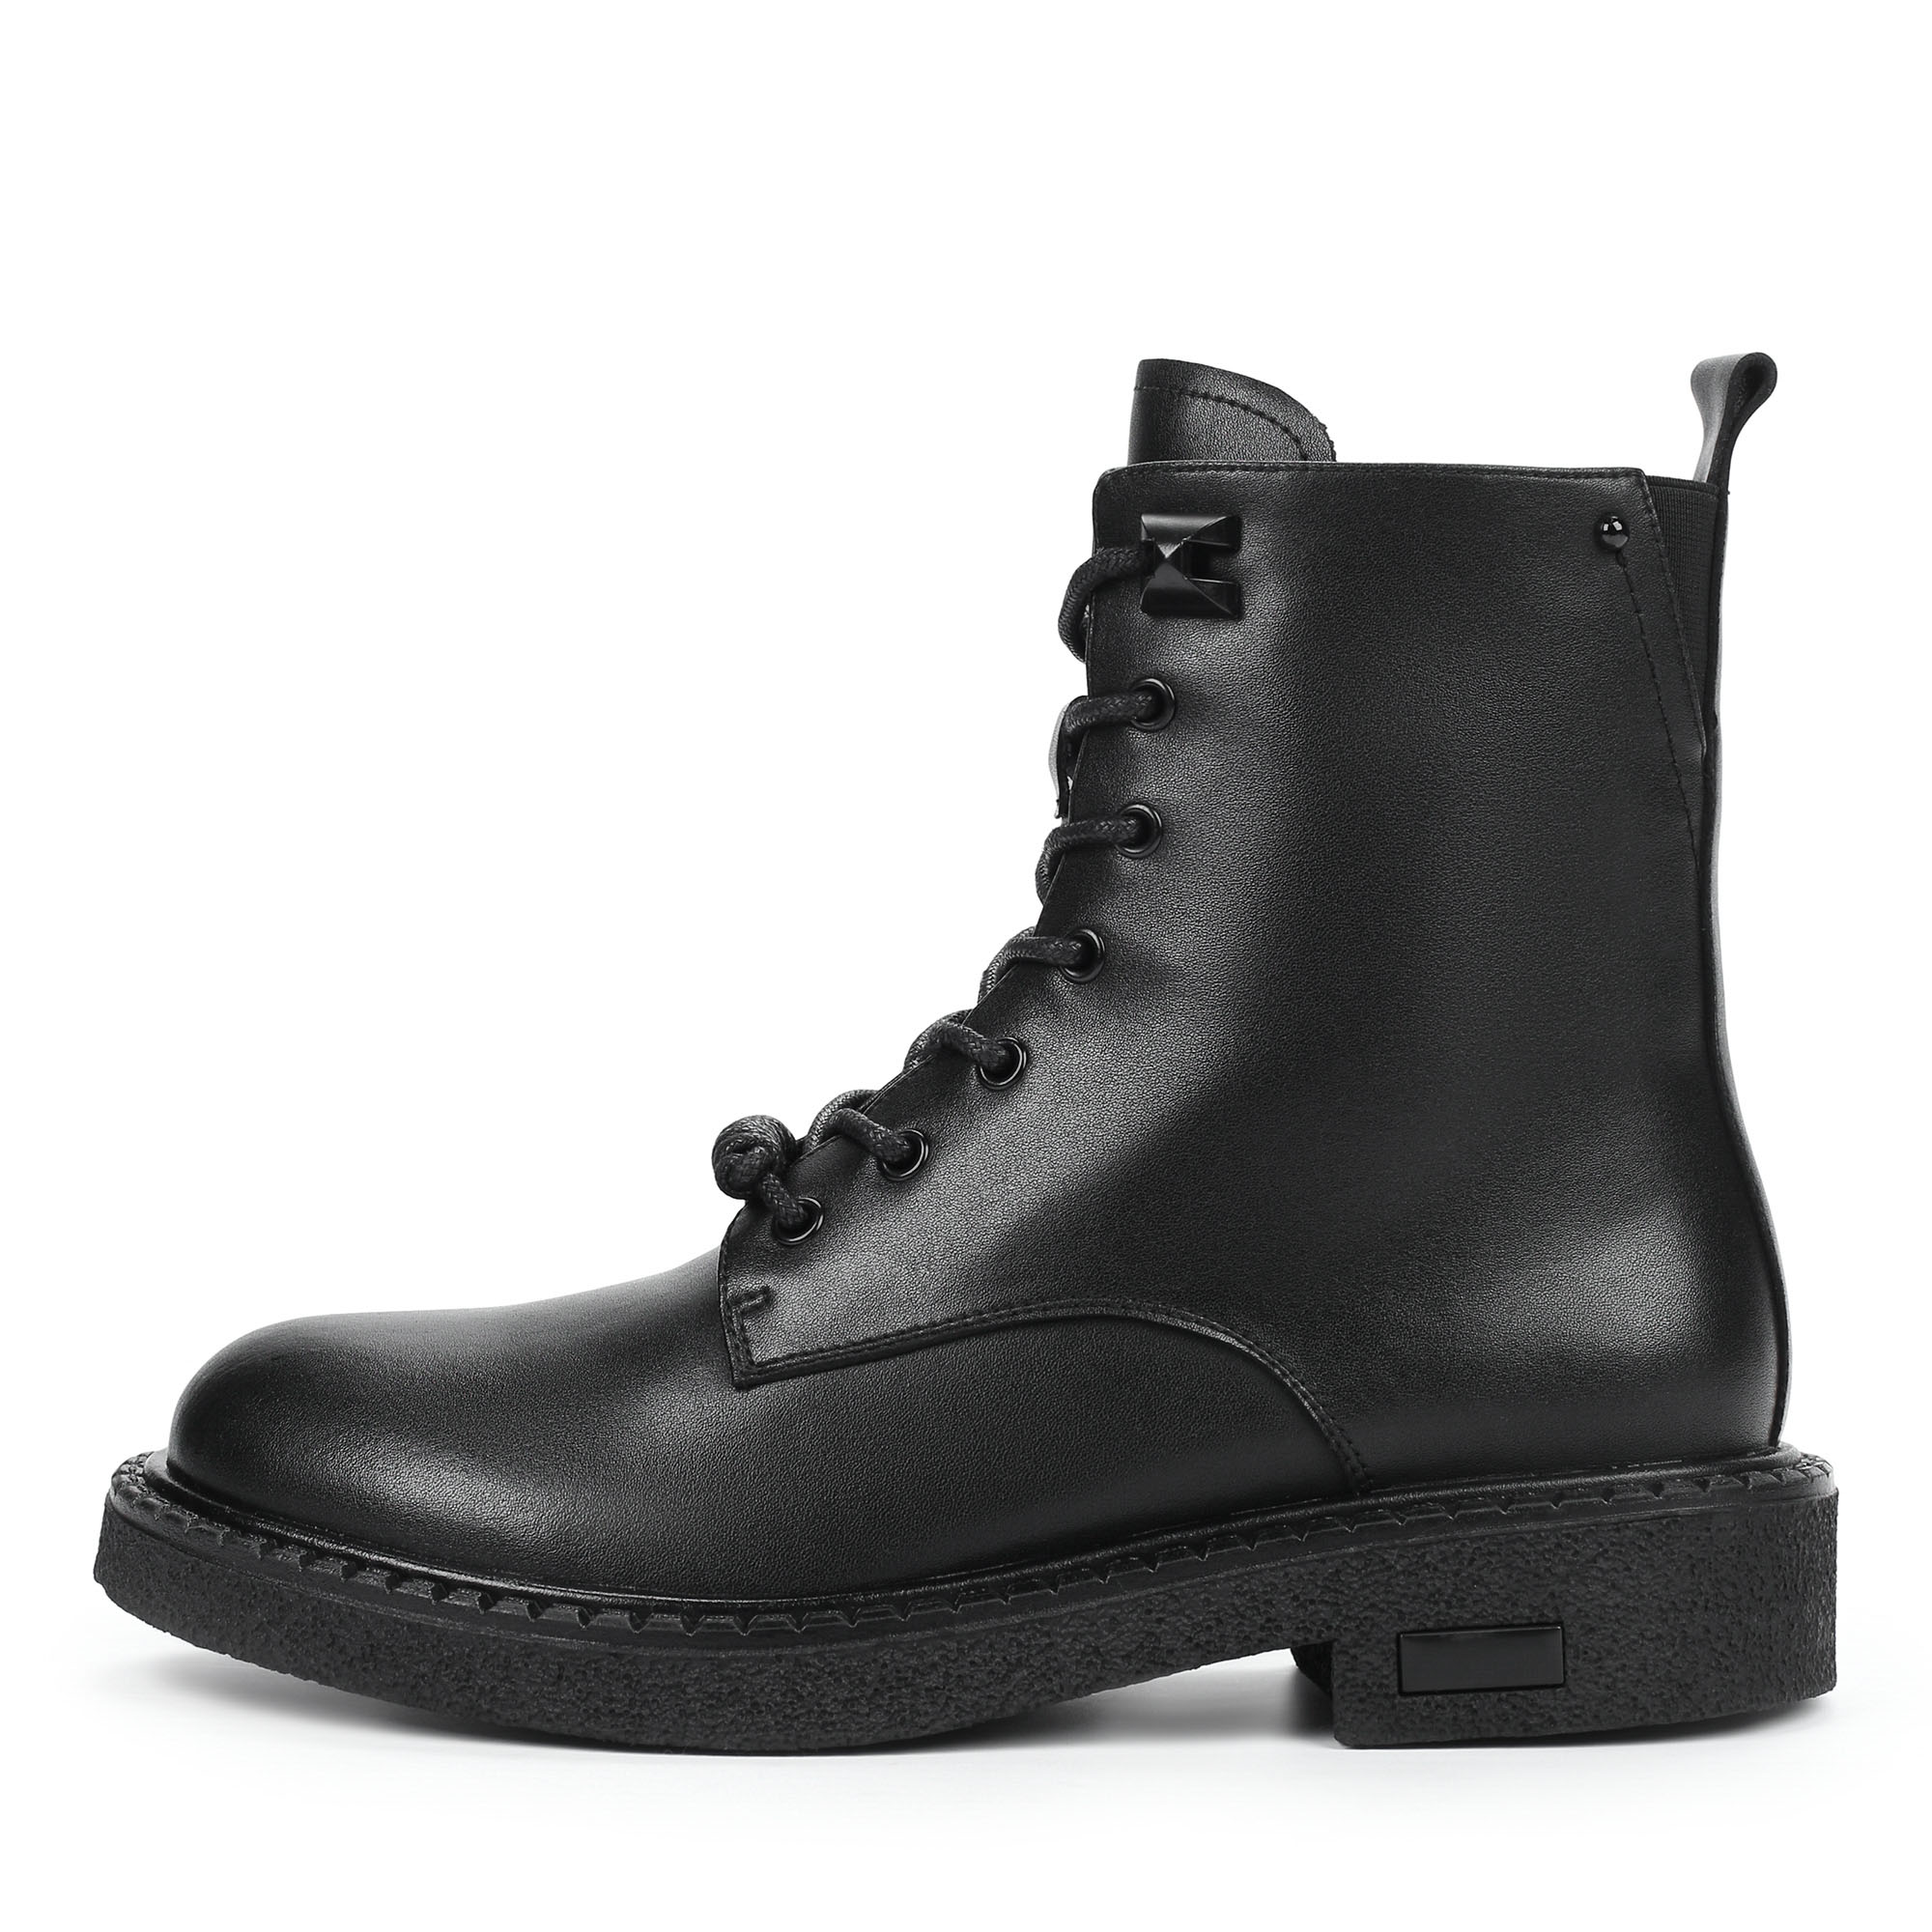 Ботинки Thomas Munz 195-040A-5602, цвет черный, размер 36